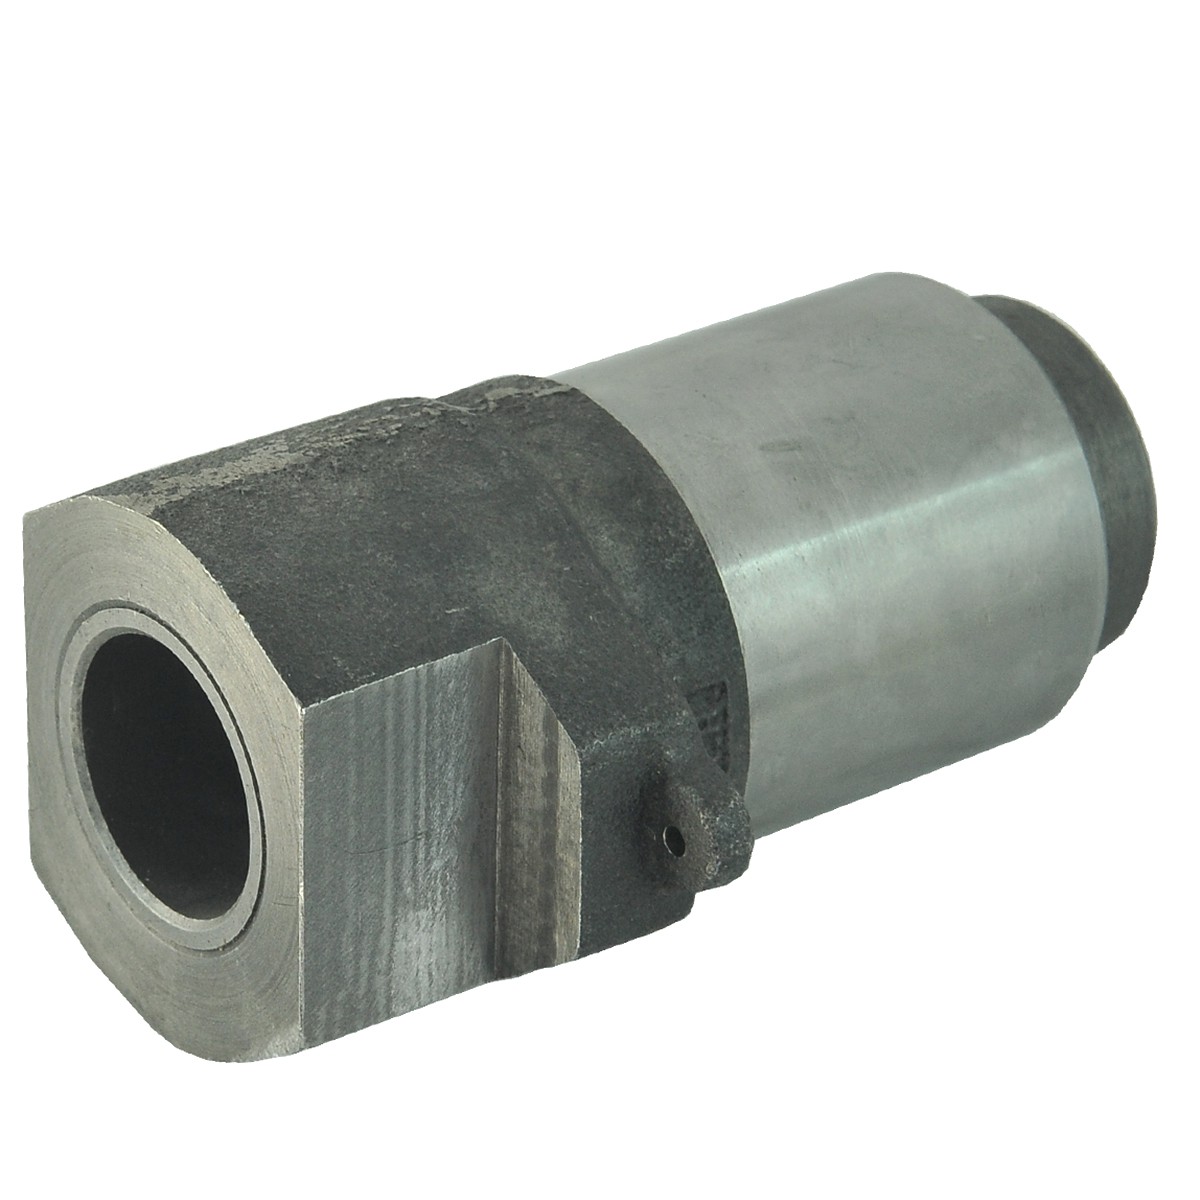 Clutch bearing support / Ø 32 mm / Yanmar EF453T / Yanmar 4TNV88 / 1A7780-22220 / 5-15-247-42